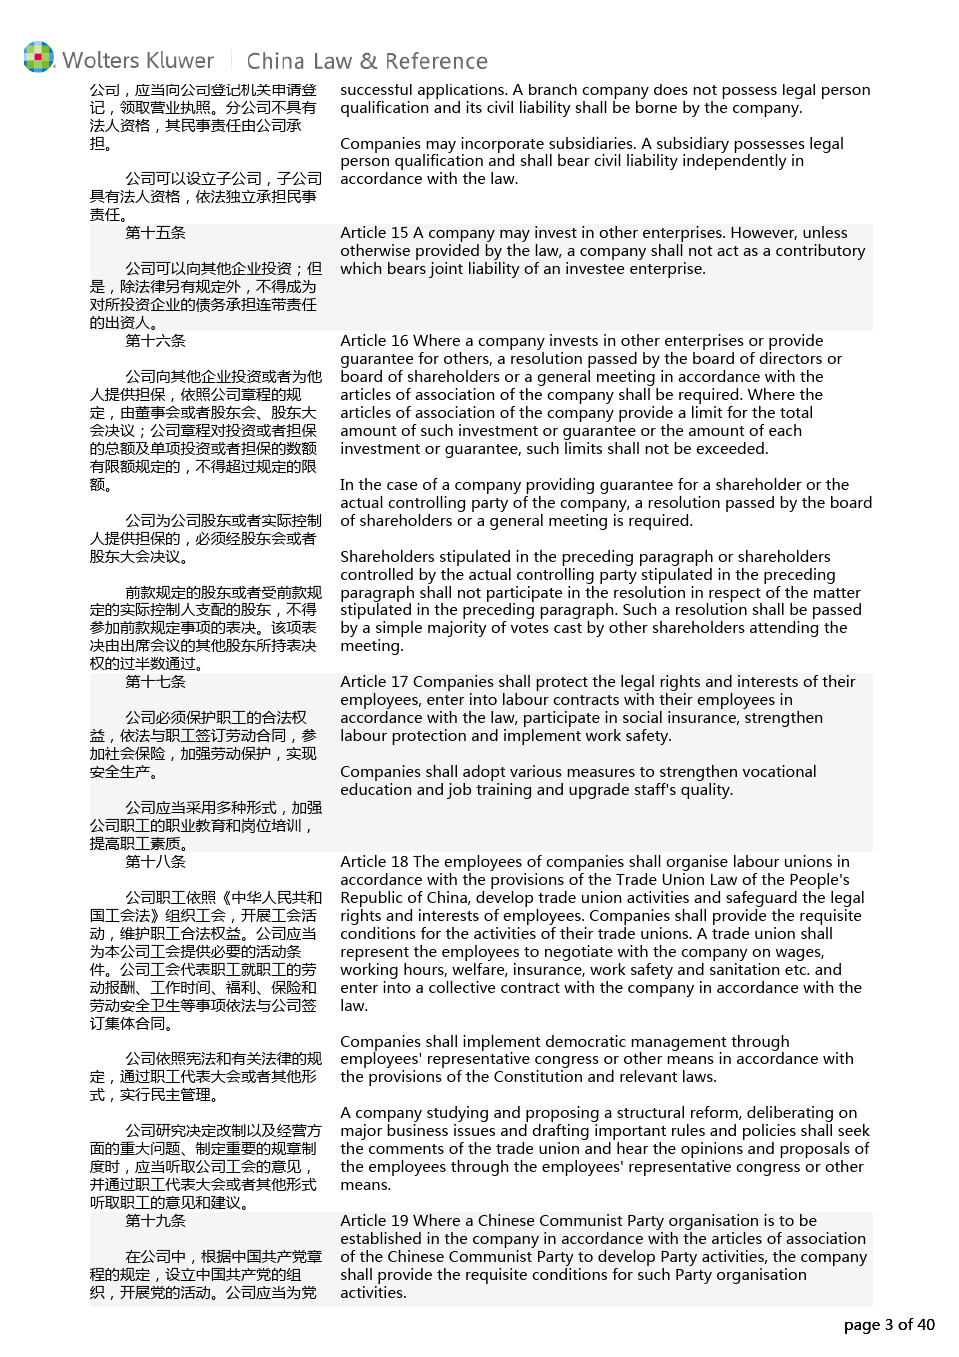 中华人民共和国公司法(2013修订)中英文对照版本